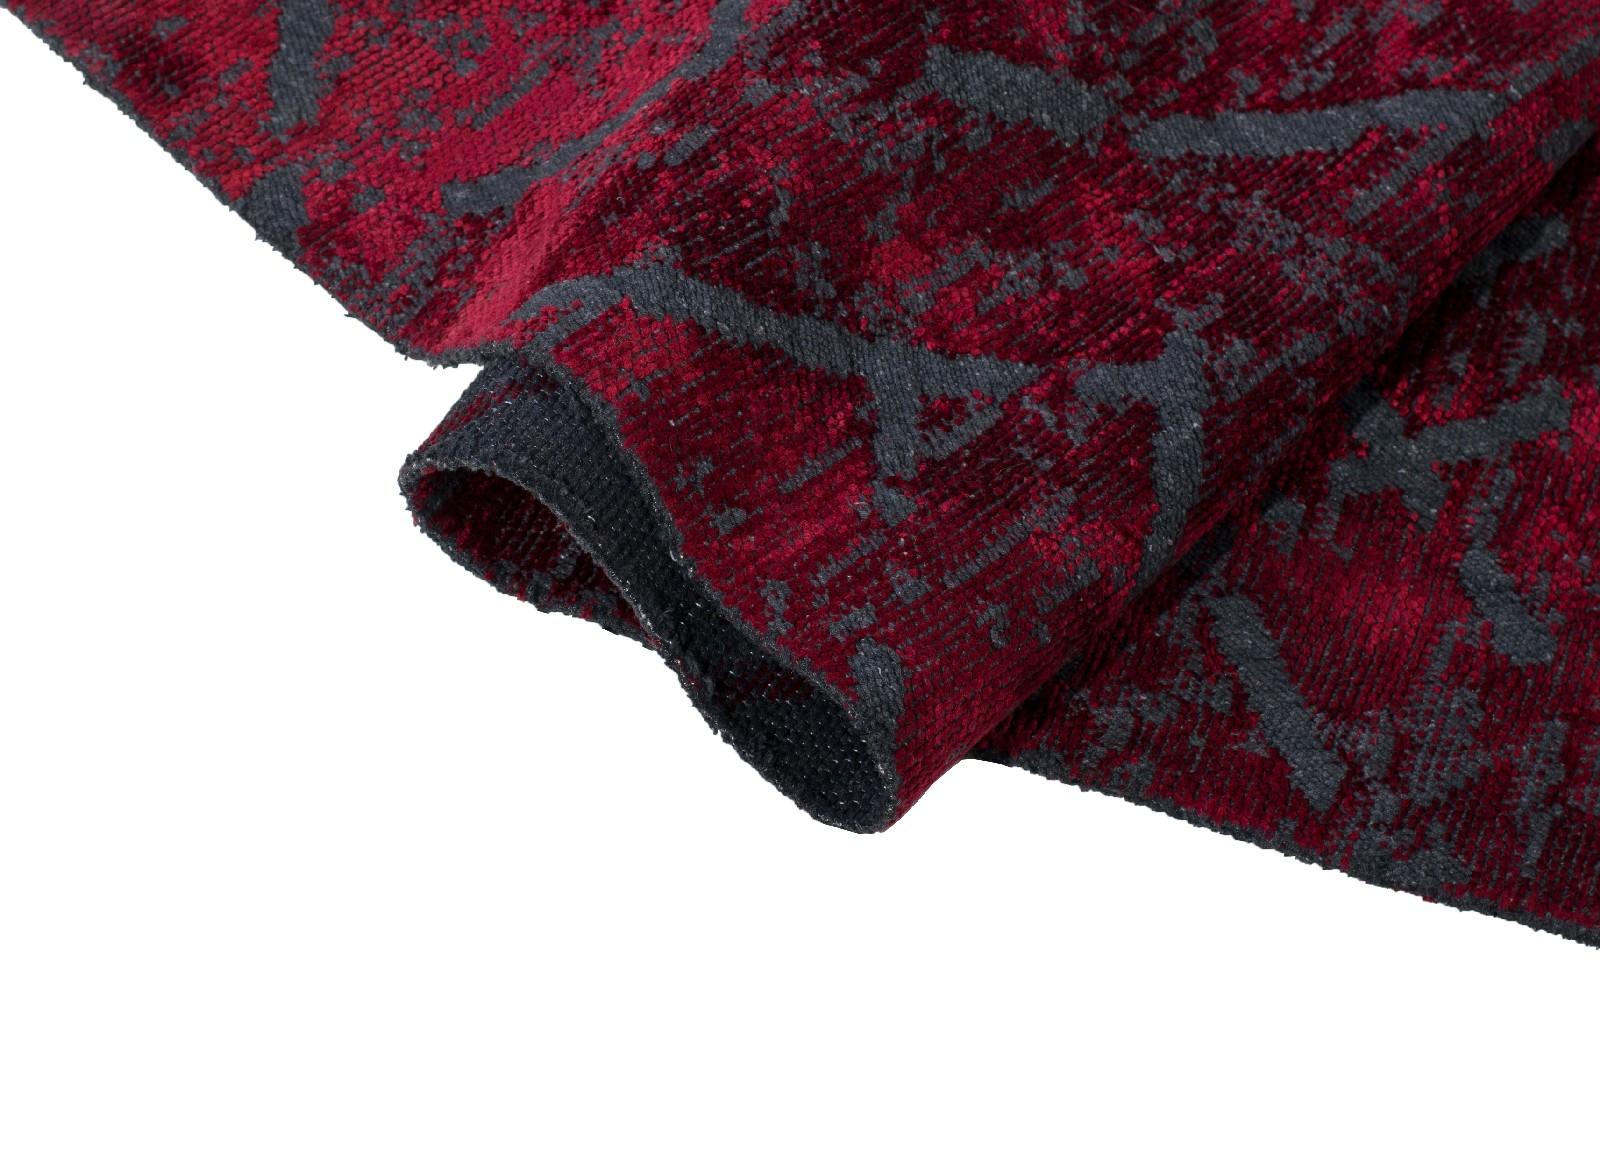 Die Rapture Collection ist eine hochwertige Teppichkollektion, die 29 Teppichdesigns in 155 Design- und Farbkombinationen umfasst, insgesamt 620 verschiedene Design-Farb-Größen-Kombinationen. Die Teppiche eignen sich gut für den Einsatz in